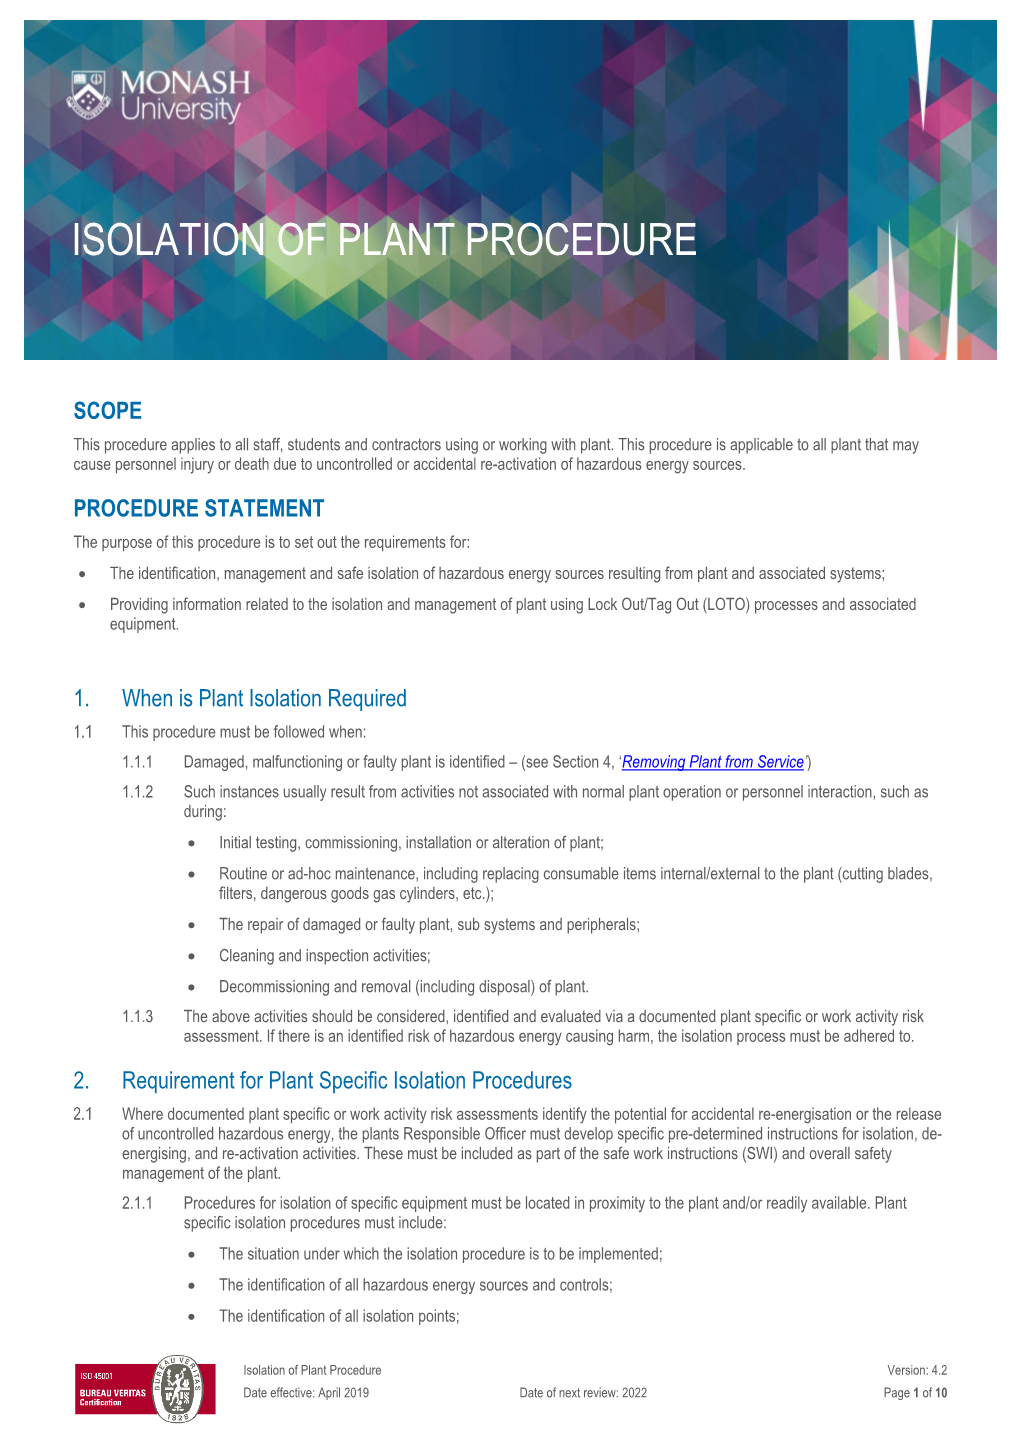 Isolation of Plant Procedure